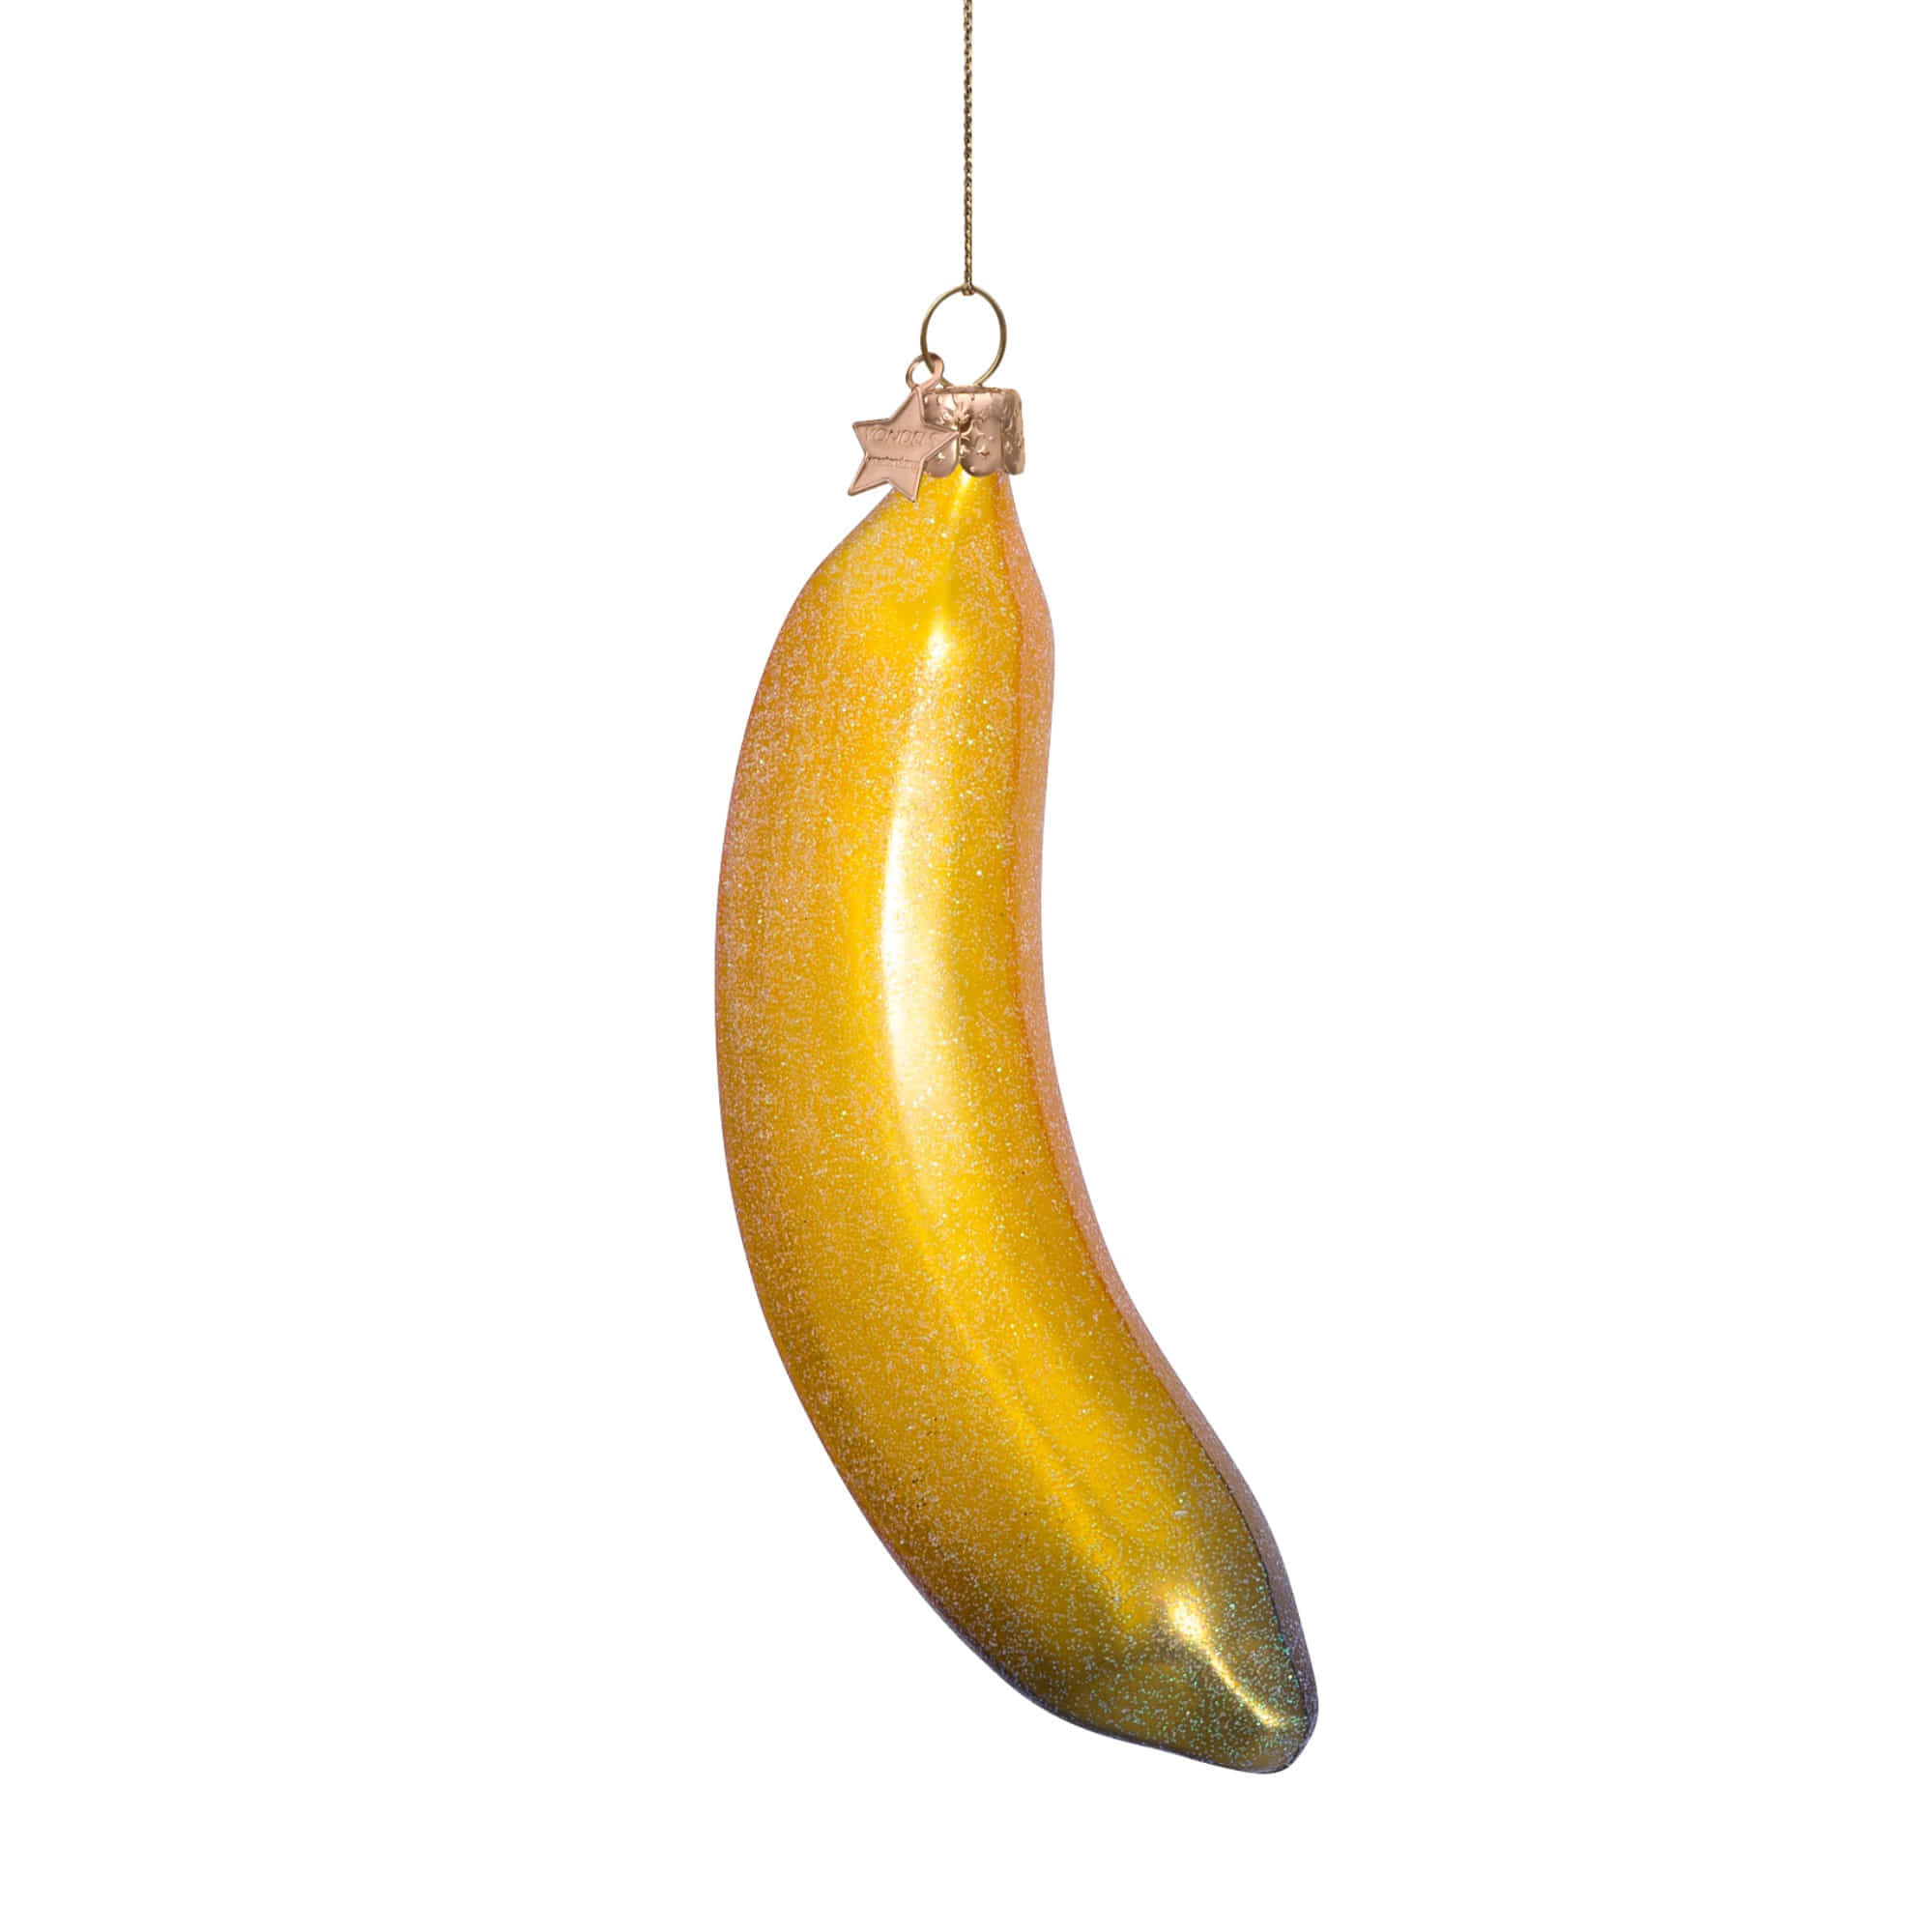 VONDELS Ornament Glass Banana